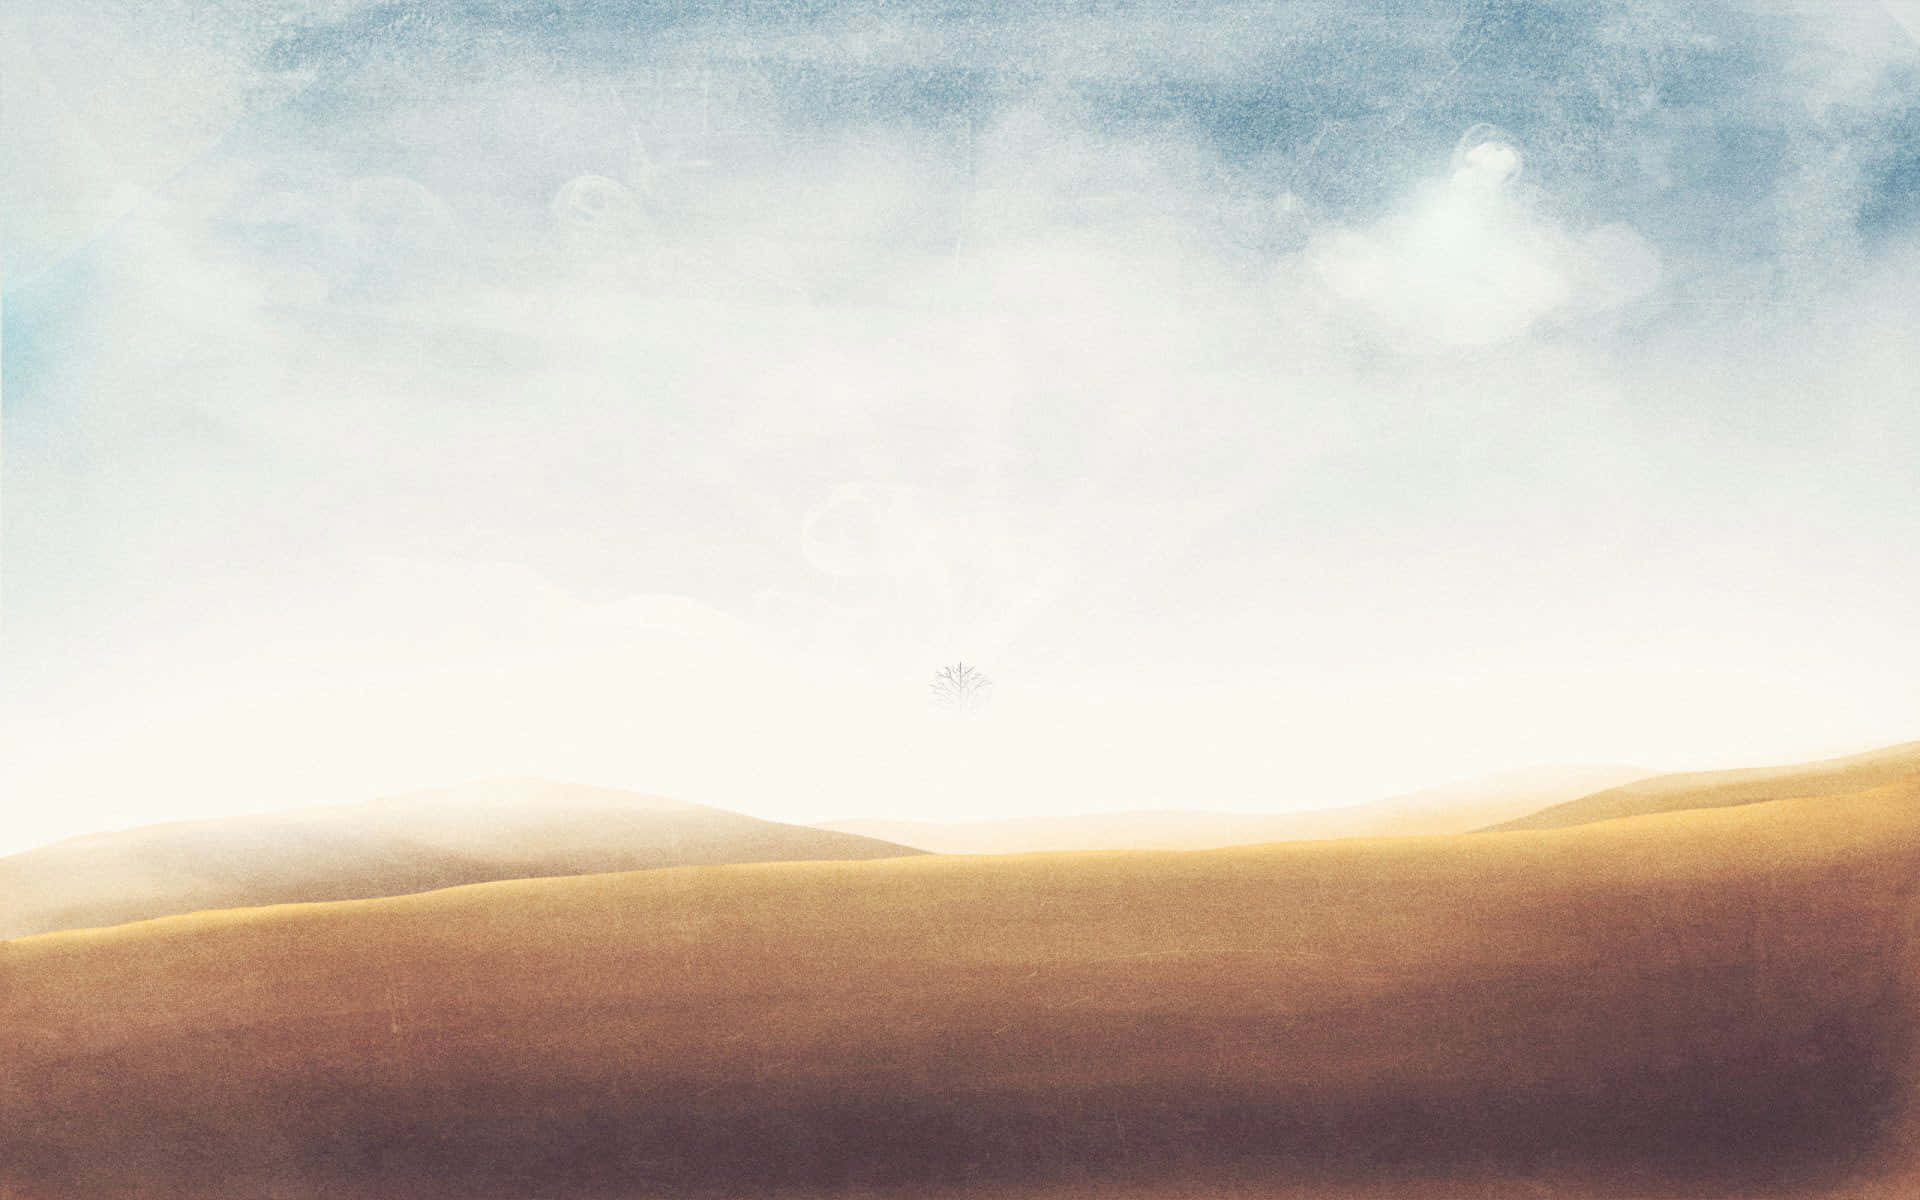 Best Minimal Sand Dunes Background